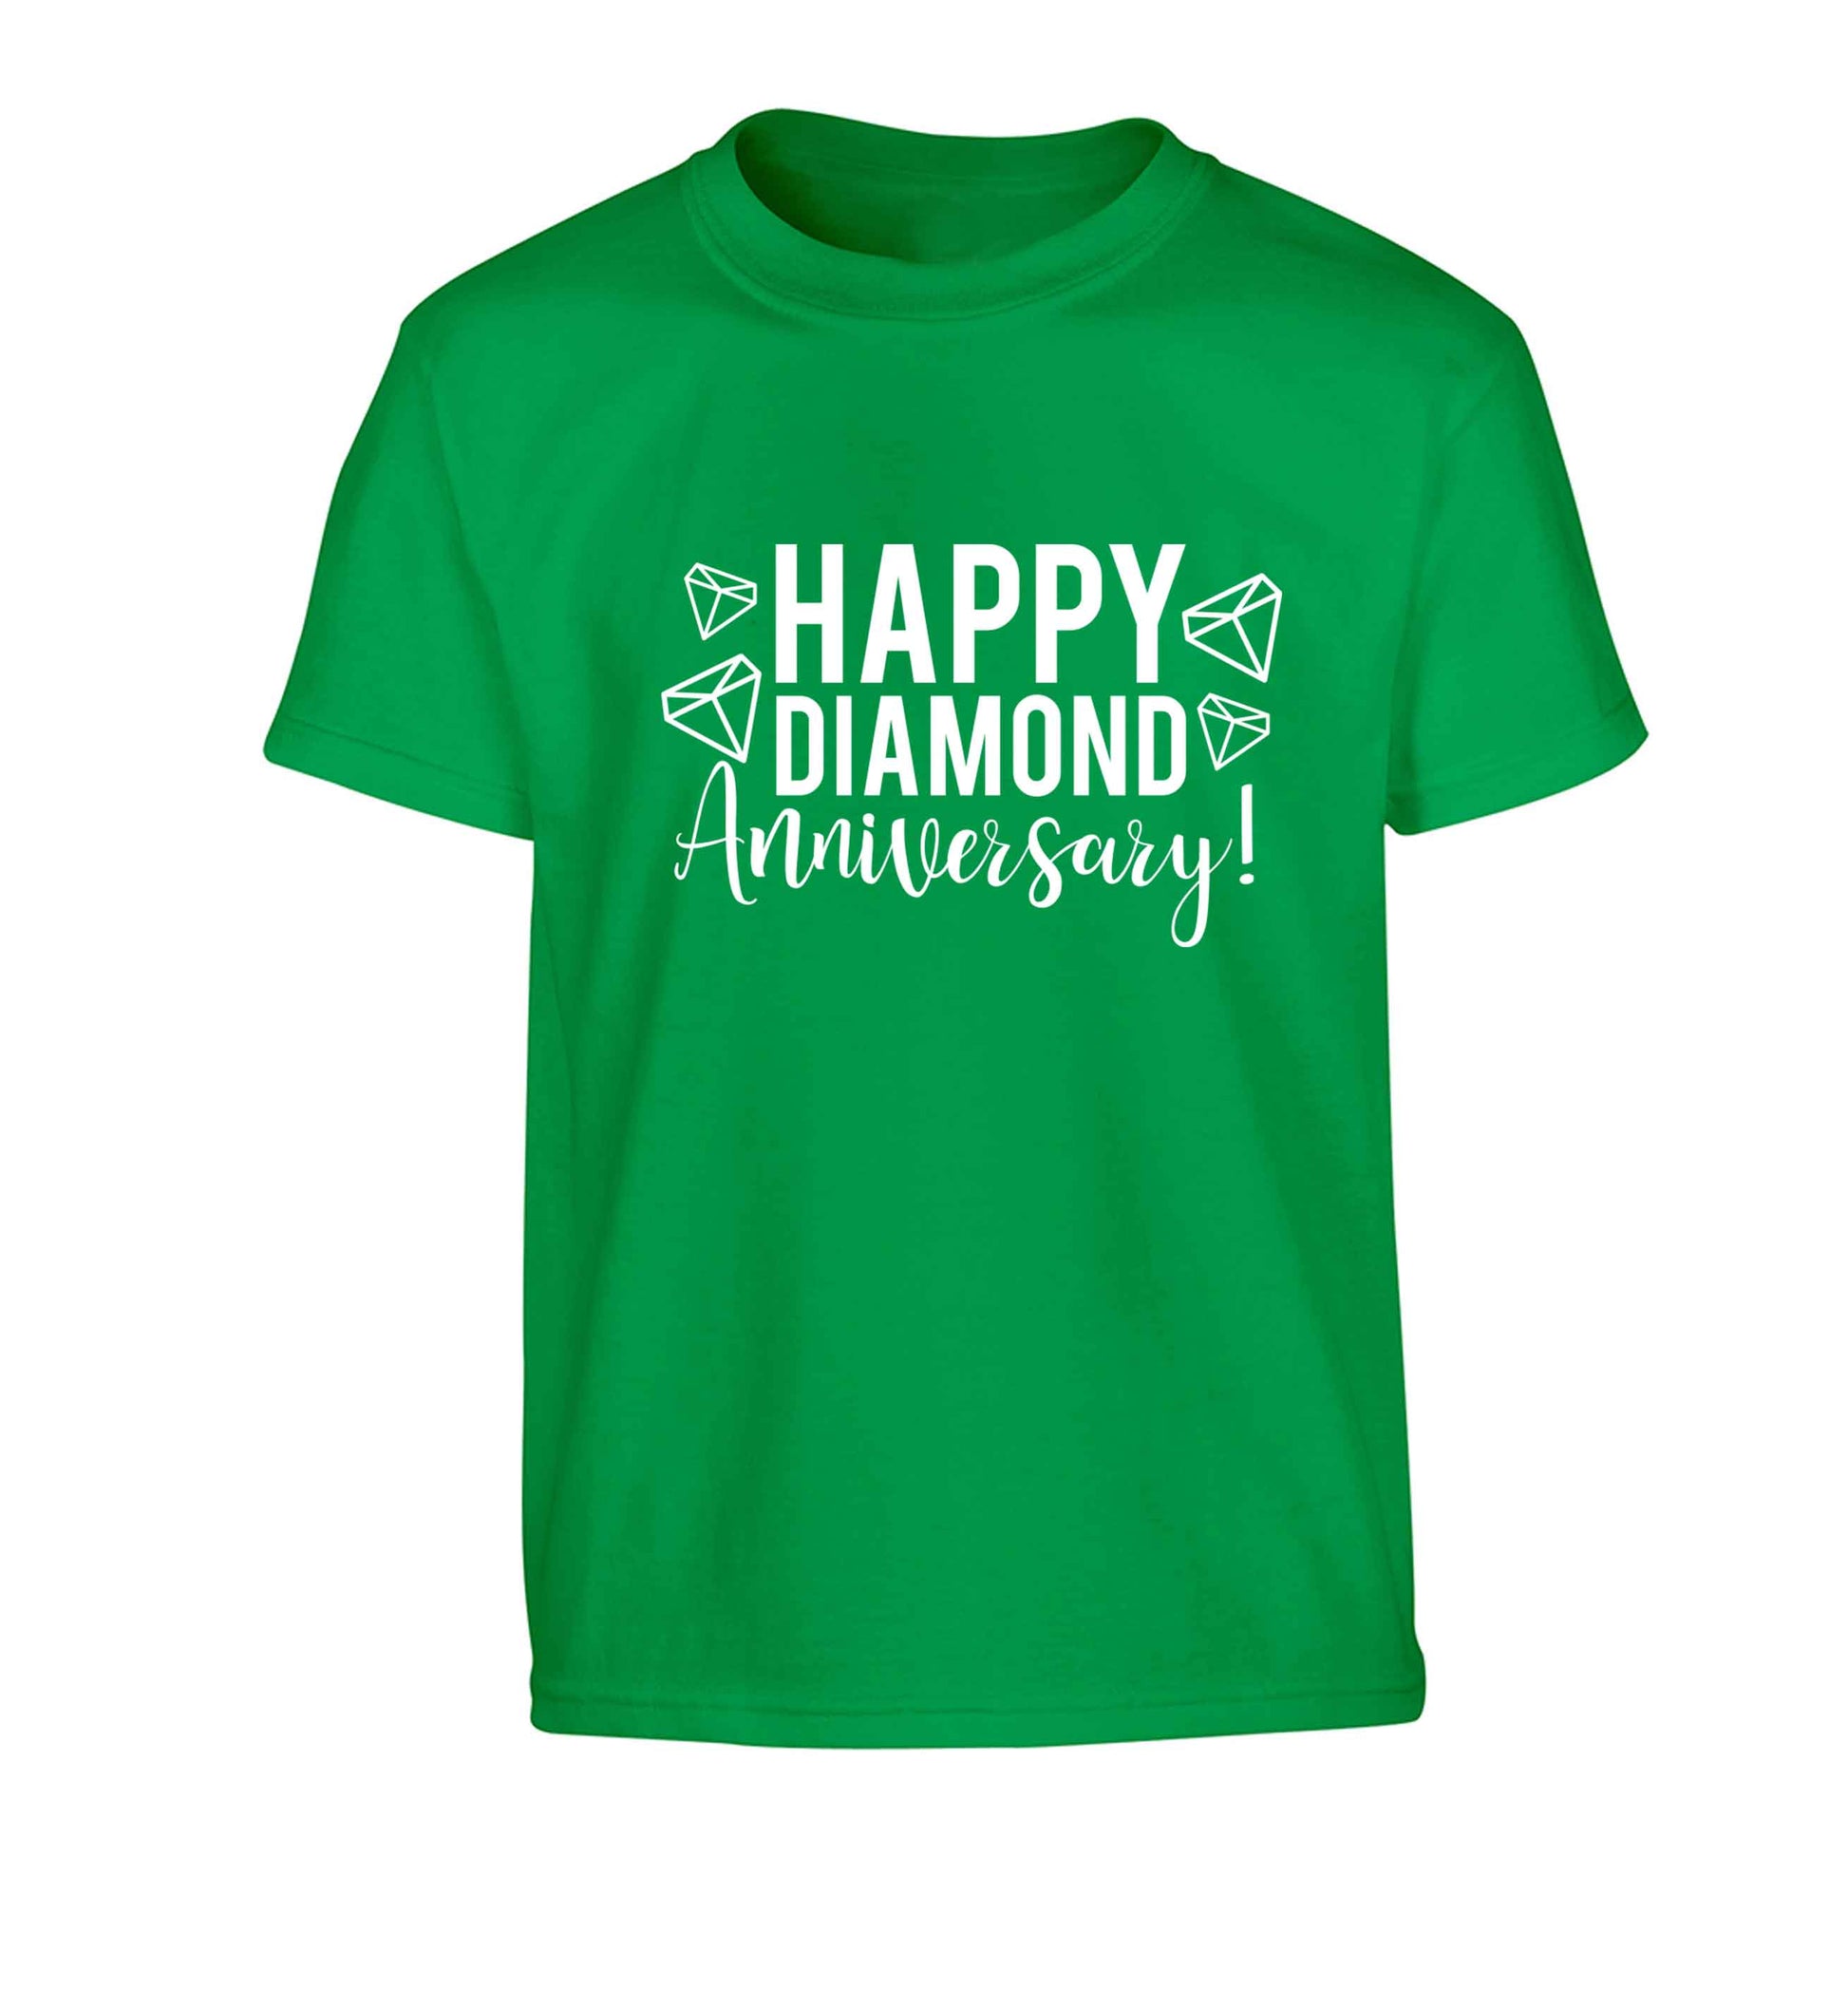 Happy diamond anniversary! Children's green Tshirt 12-13 Years